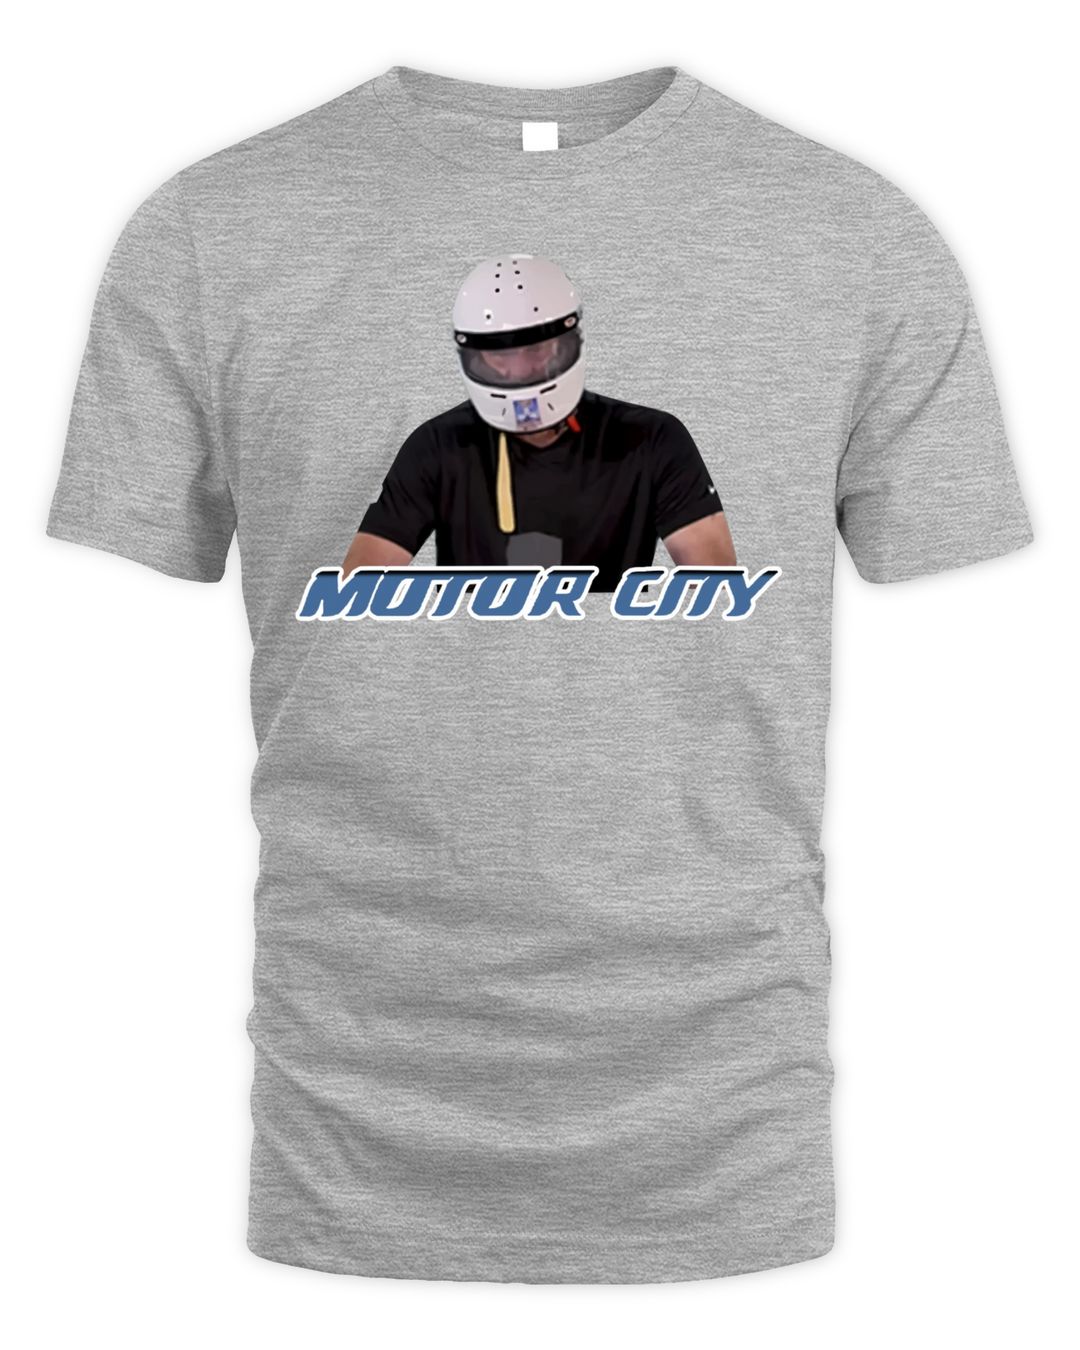 Pat Mcafee Merch Motor City Shirt